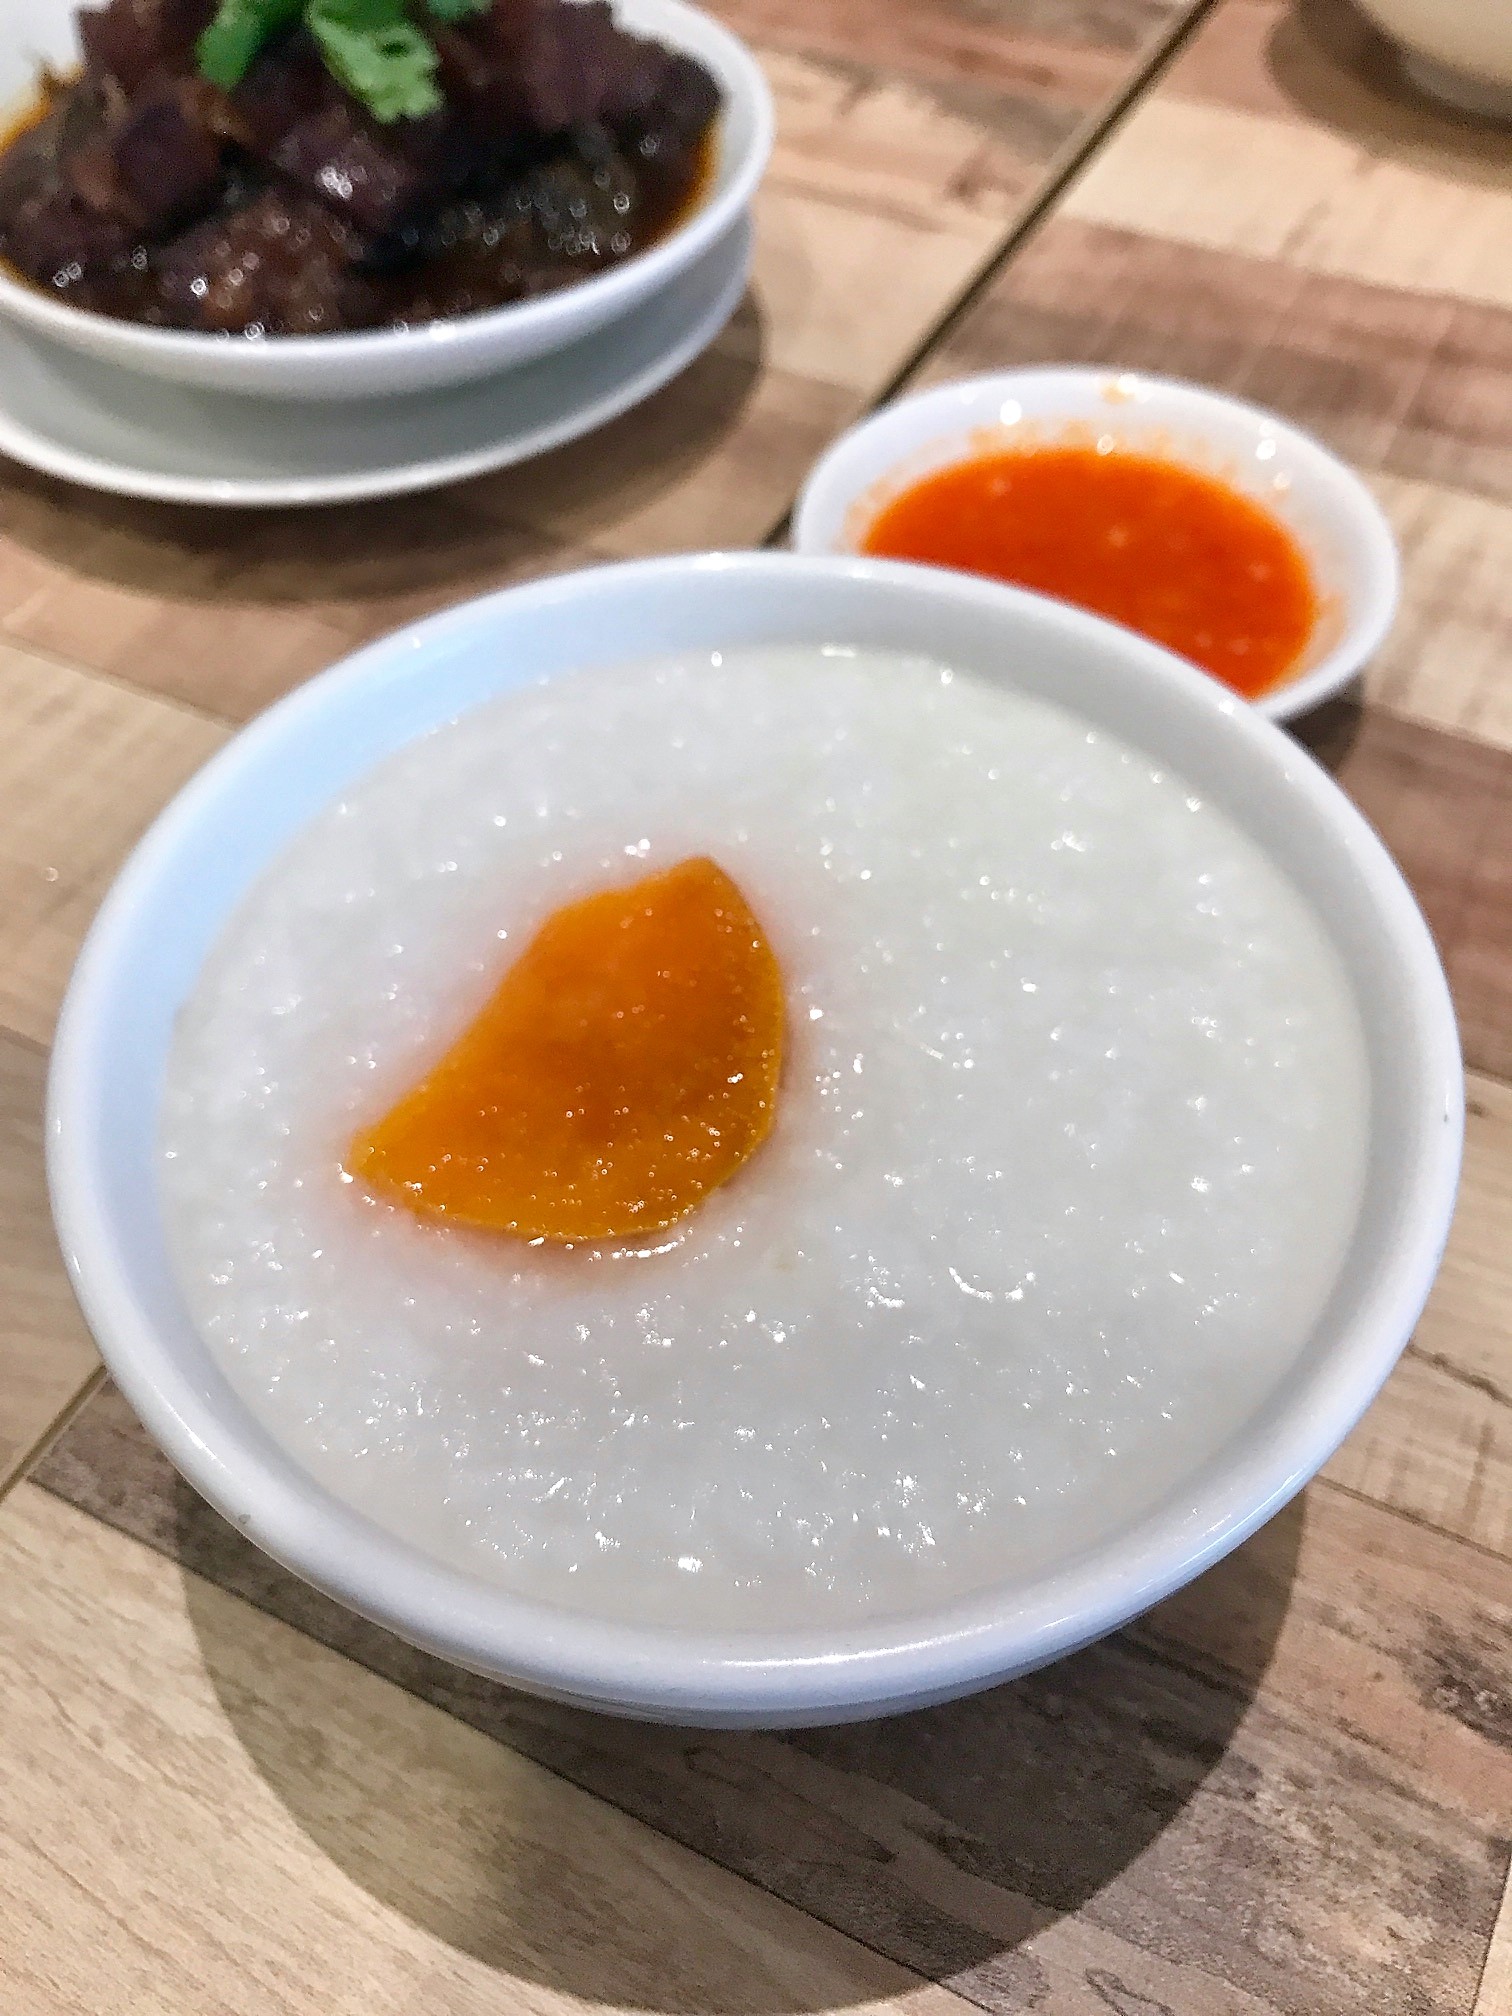 revival of Taiwan porridge in Singapore